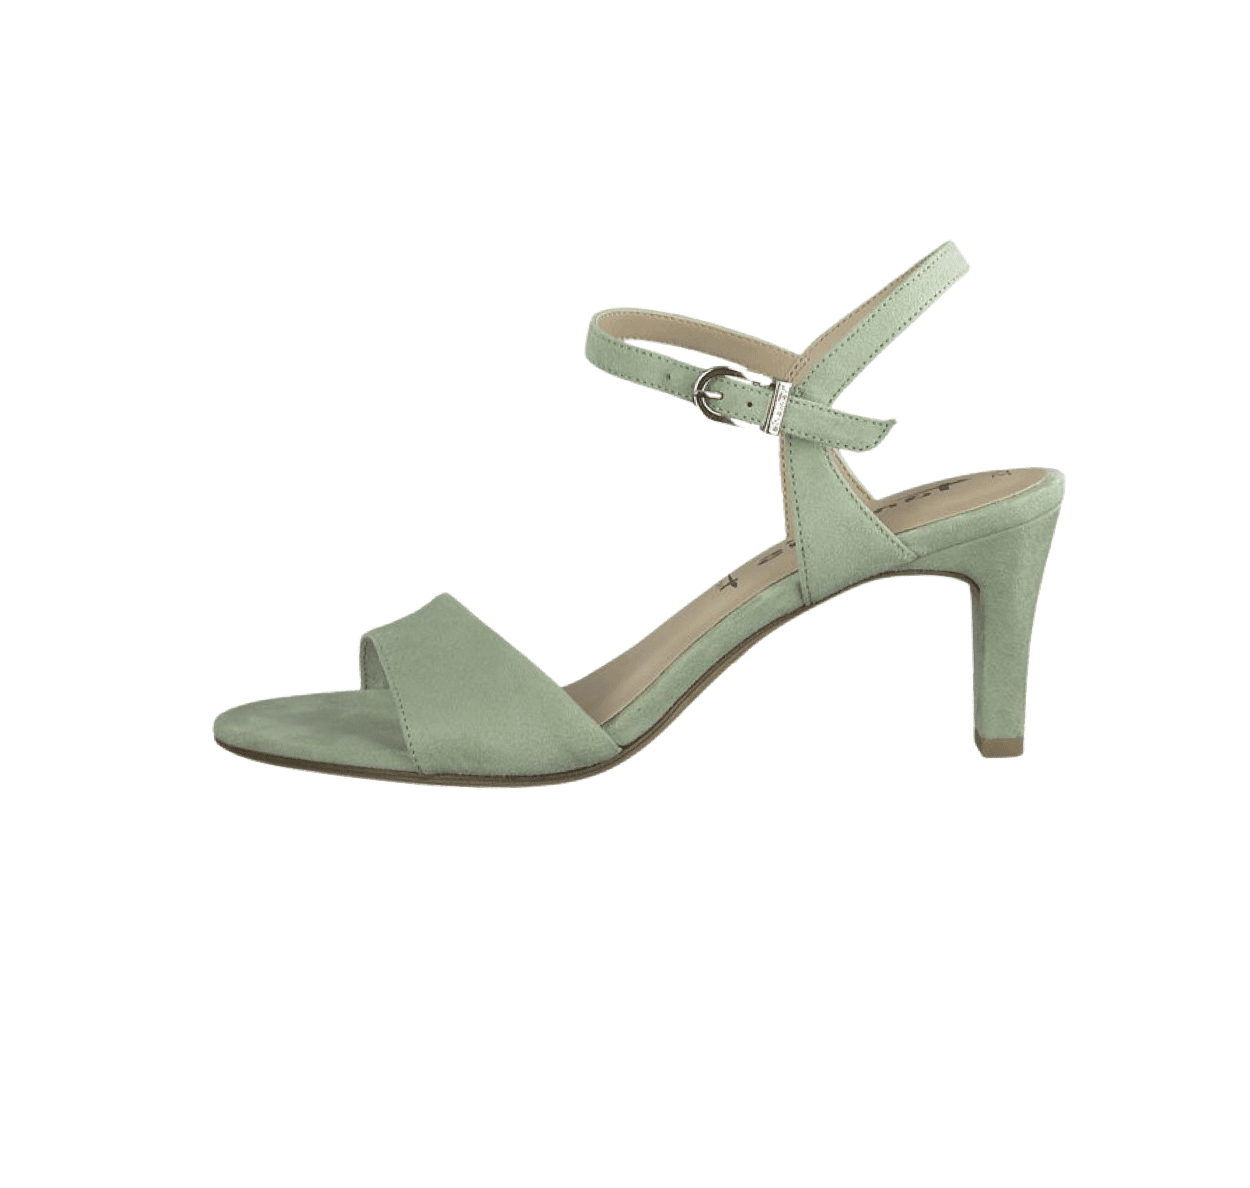 boble Hviske Godkendelse Tamaris sandal i grøn til dame med 7,5 cm hæl | Damkjær Sko 》